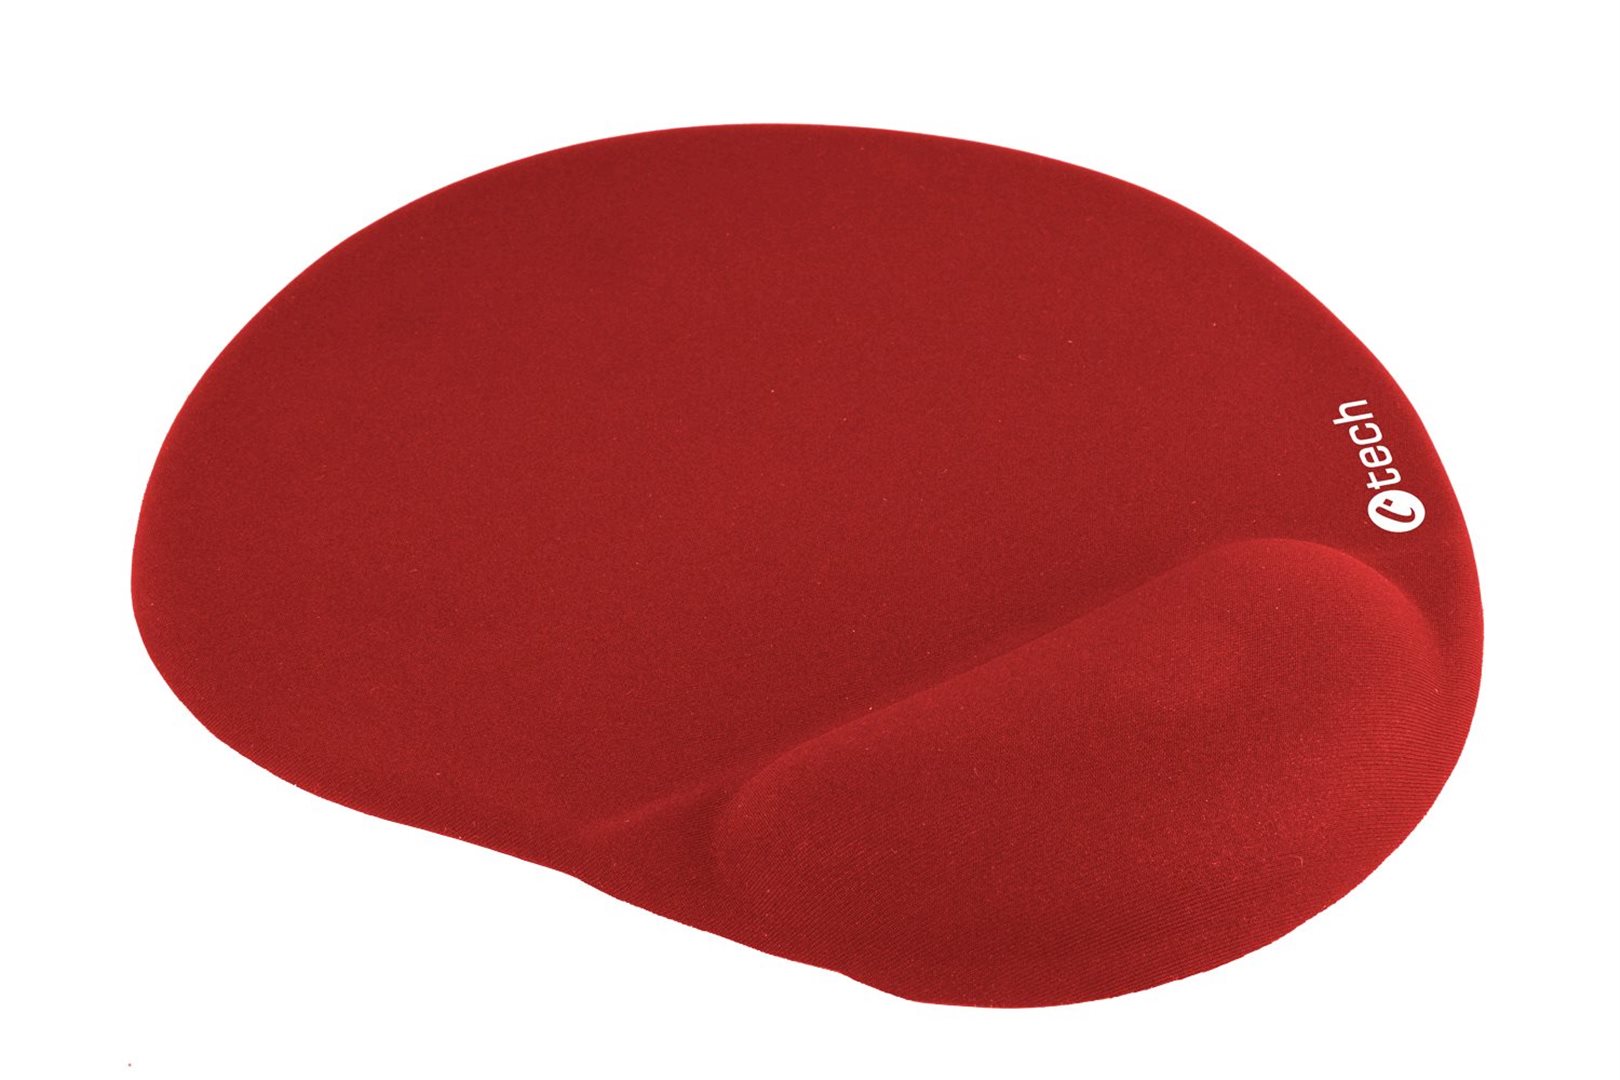 Podložka pod myš gelová C-TECH MPG-03, červená, 240x220mm